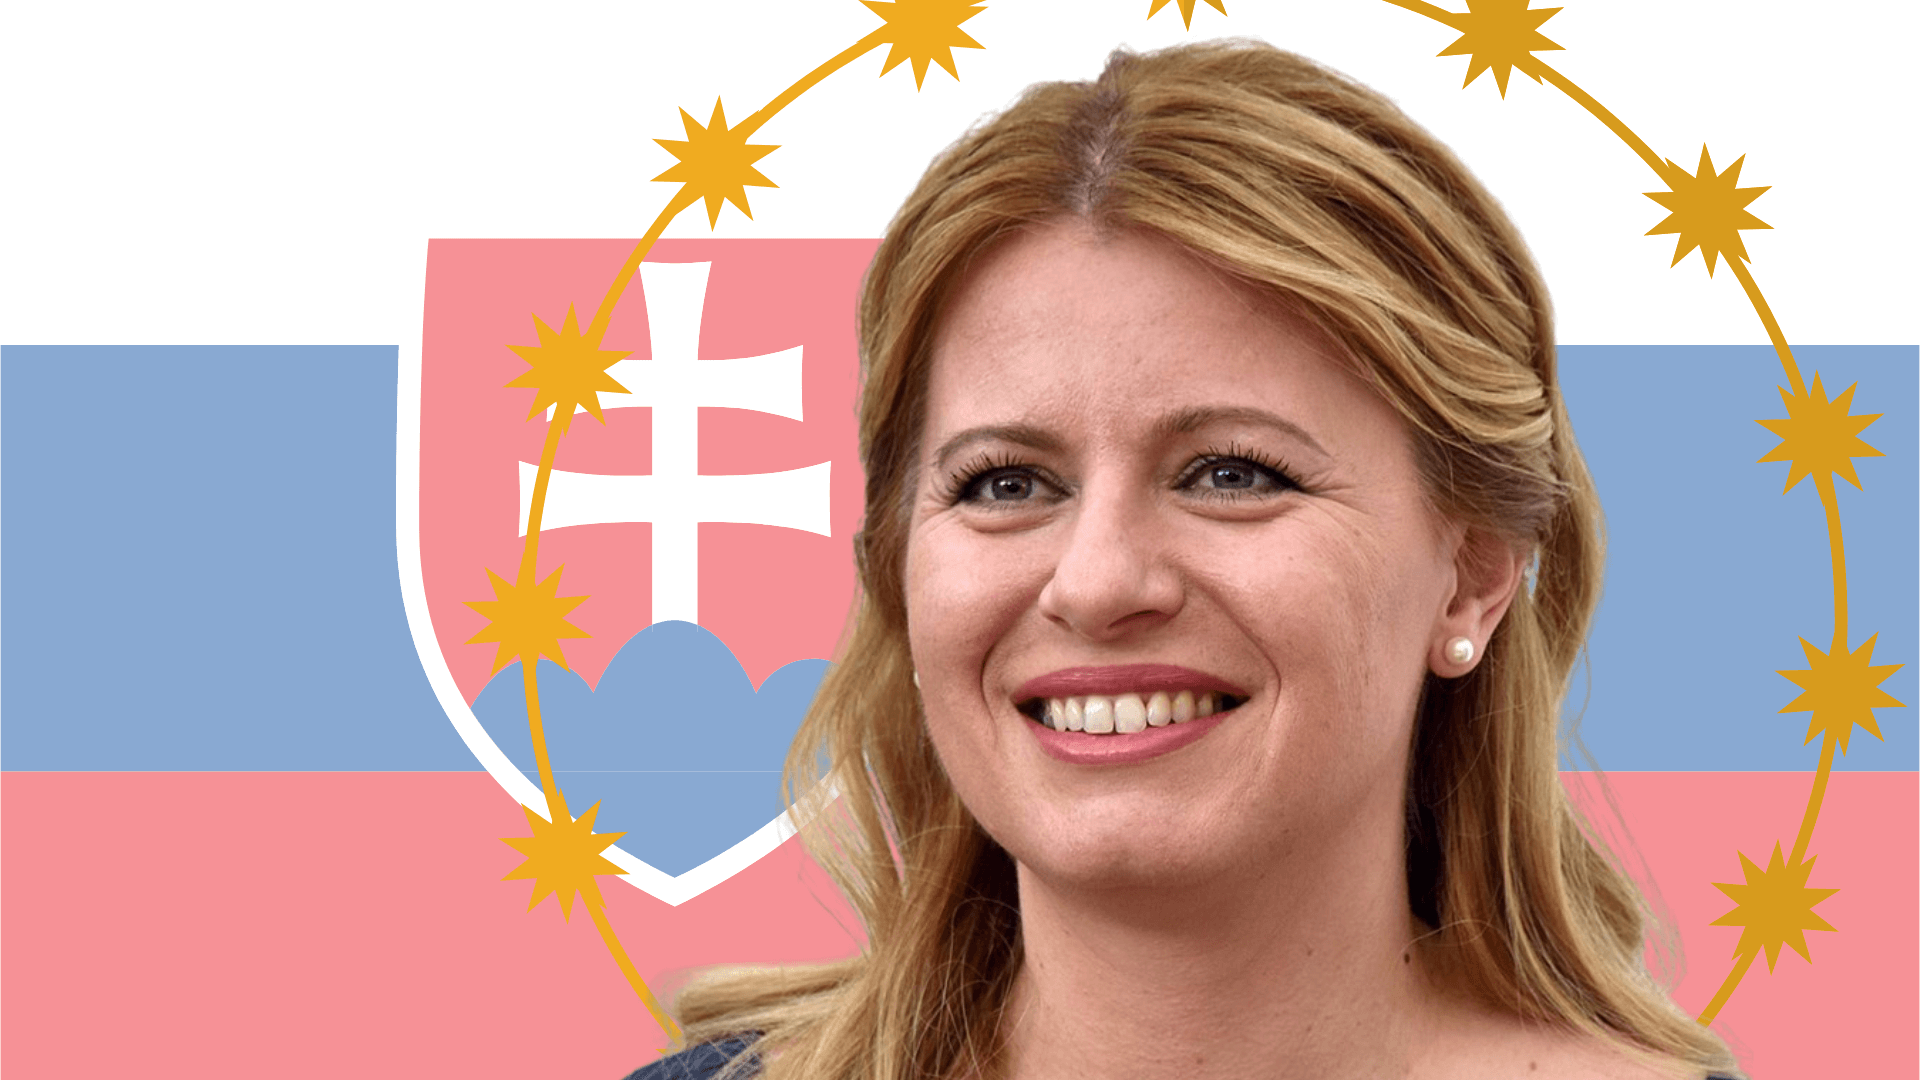 Beneficial Unconventionality How Zuzana Čaputová Became Slovakia’s First Female President